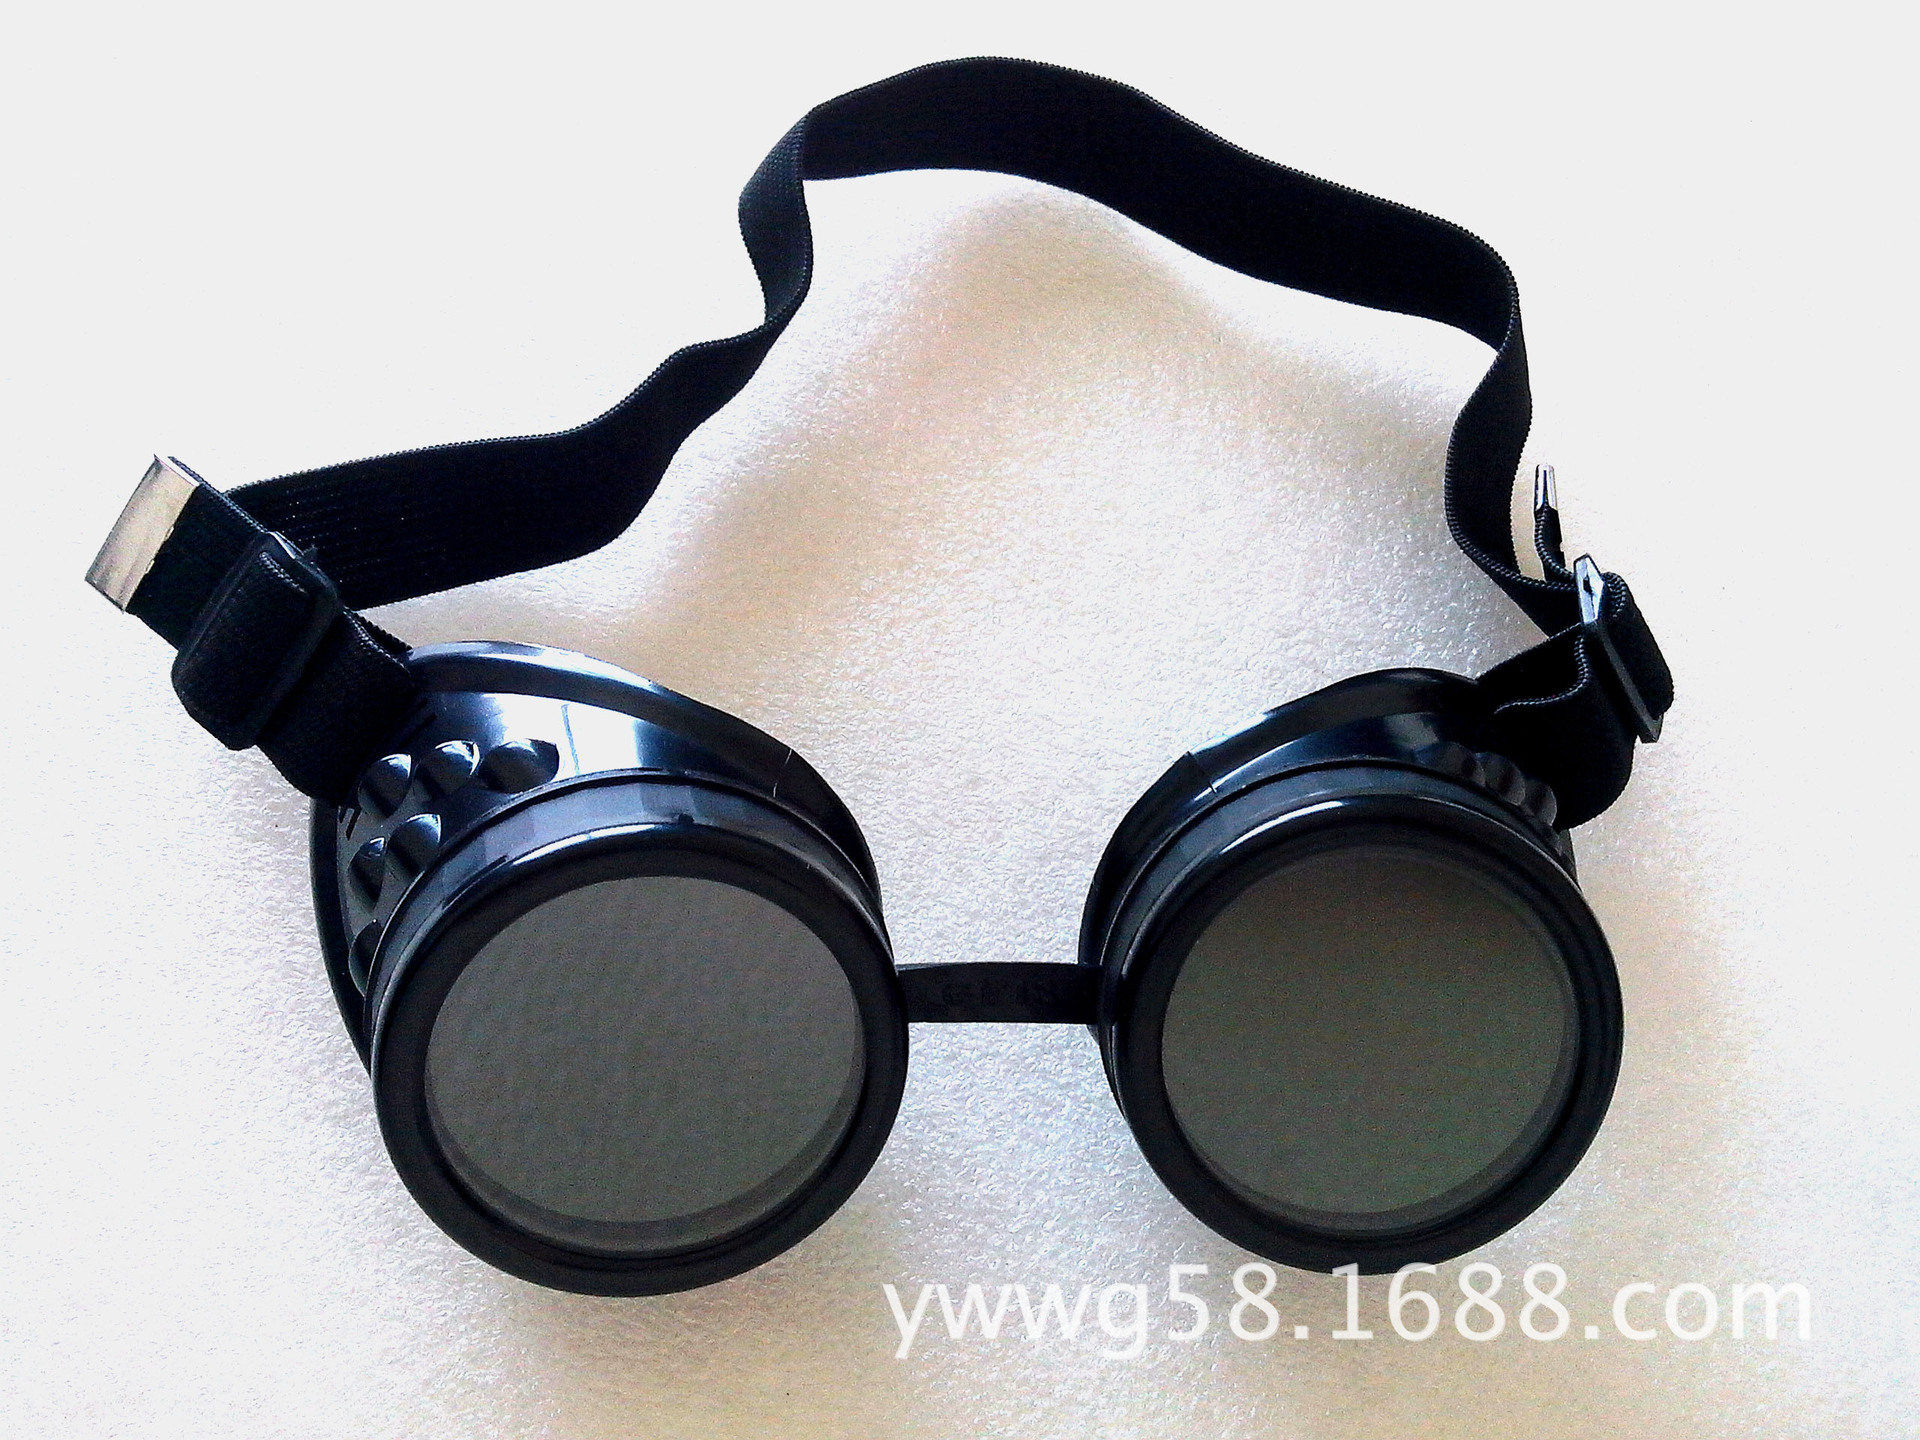 鱼鳞造型防护眼镜